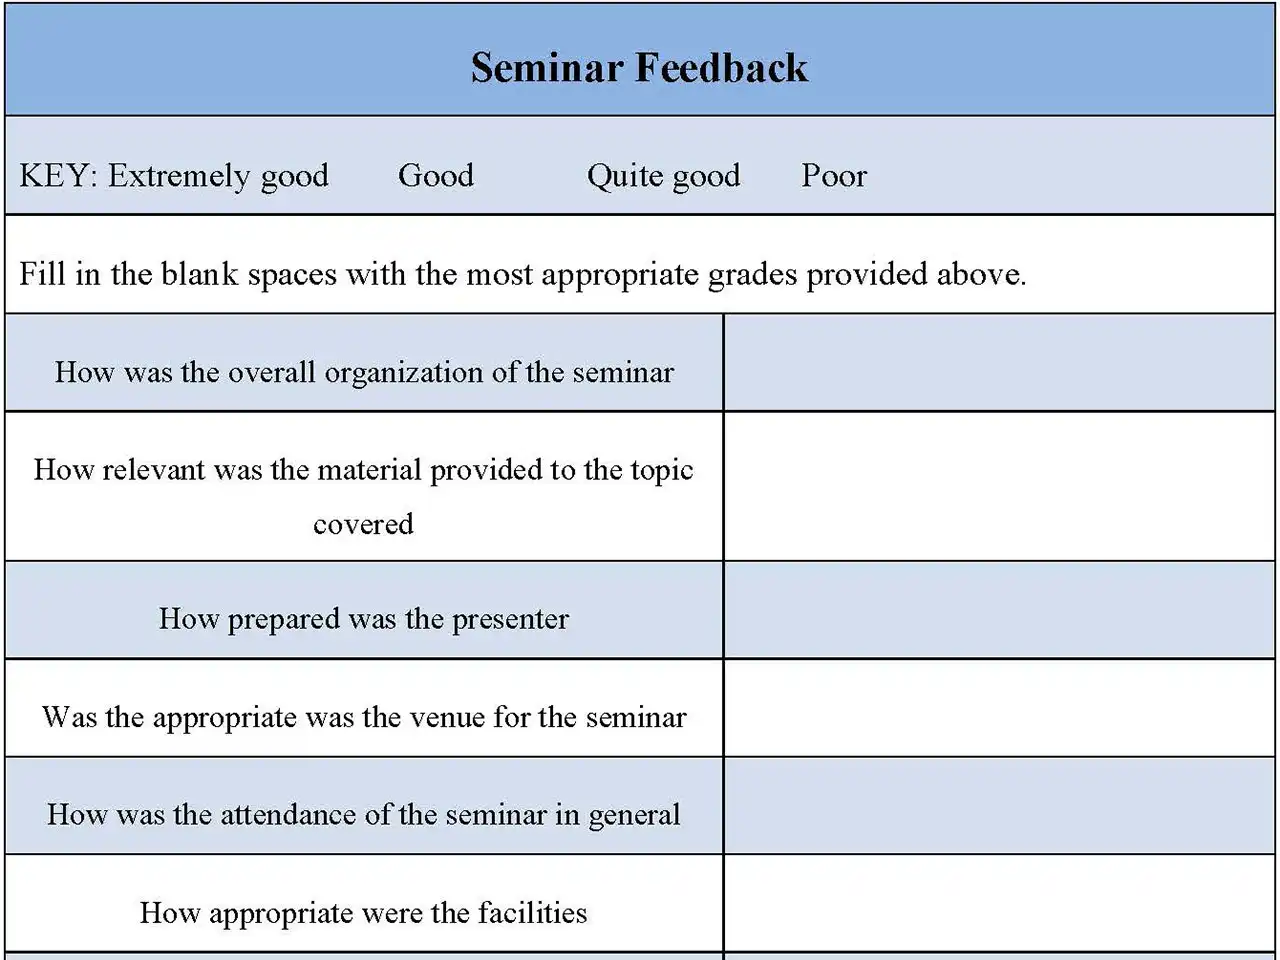 Seminar Feedback Form